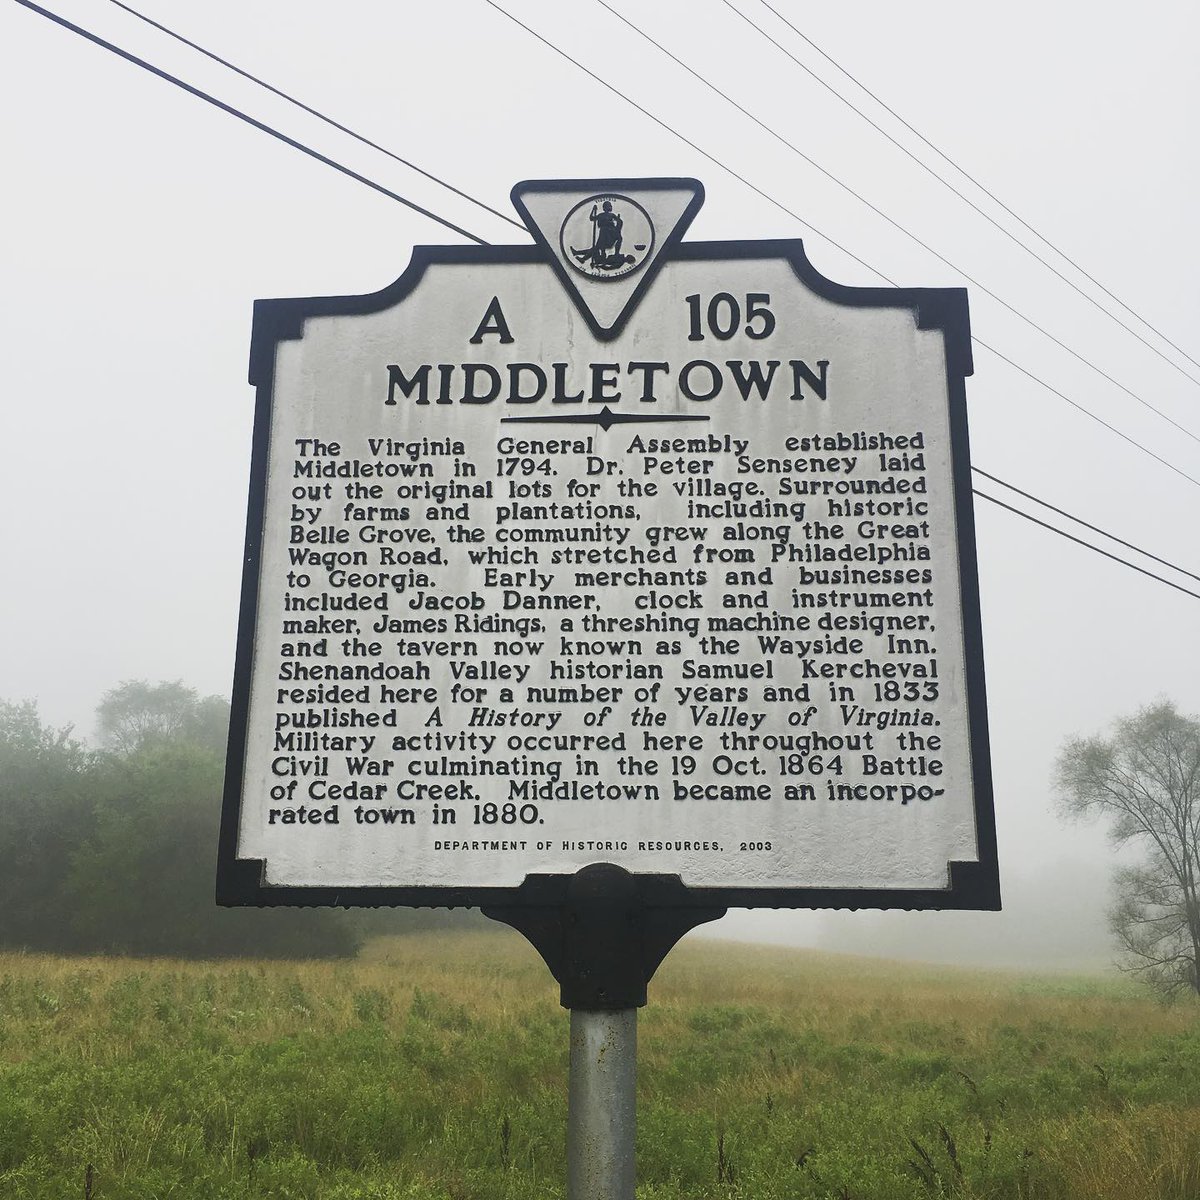 Misty morning here in Middletown, Va. 

#historicmarker #virginiahistory #departmentofhistoricresources #statehistoricmarker #vahistoricmarker #historichighway #valleypike #route11 #middletownva